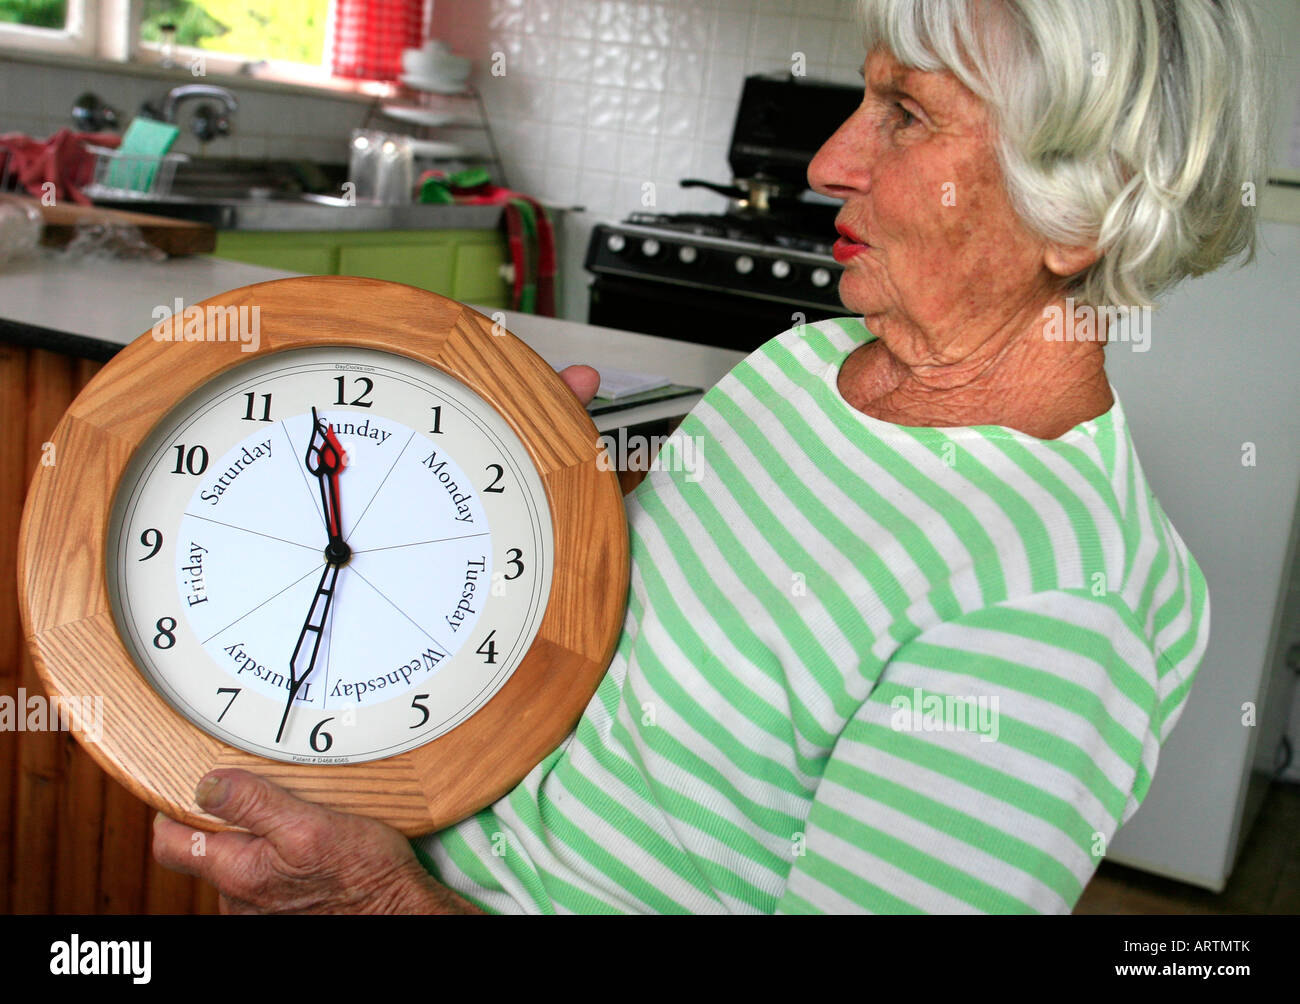 Eine ältere Frau mit einigen Gedächtnisverlust hält eine Uhr, die den Wochentag und die Uhrzeit anzeigt Stockfoto